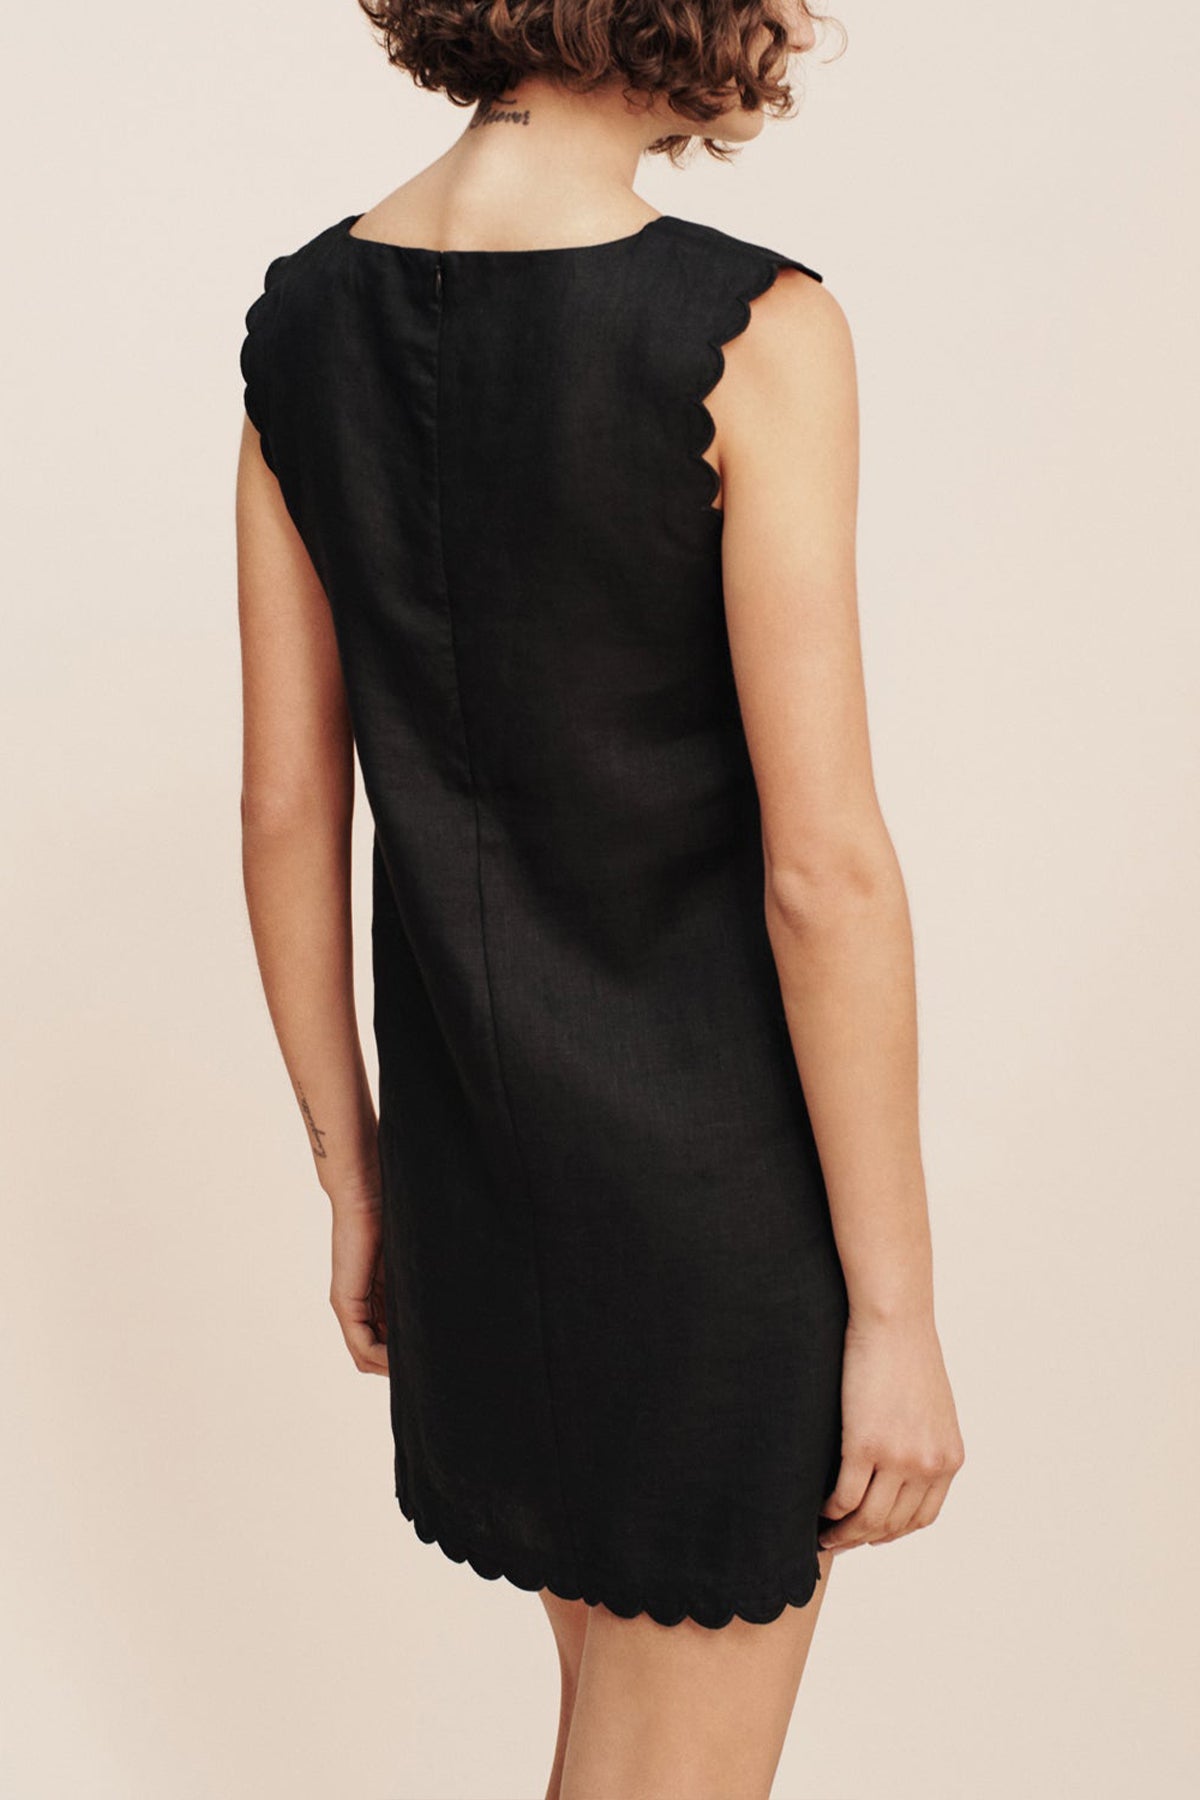 Zayla Mini Dress in Black - shop-olivia.com